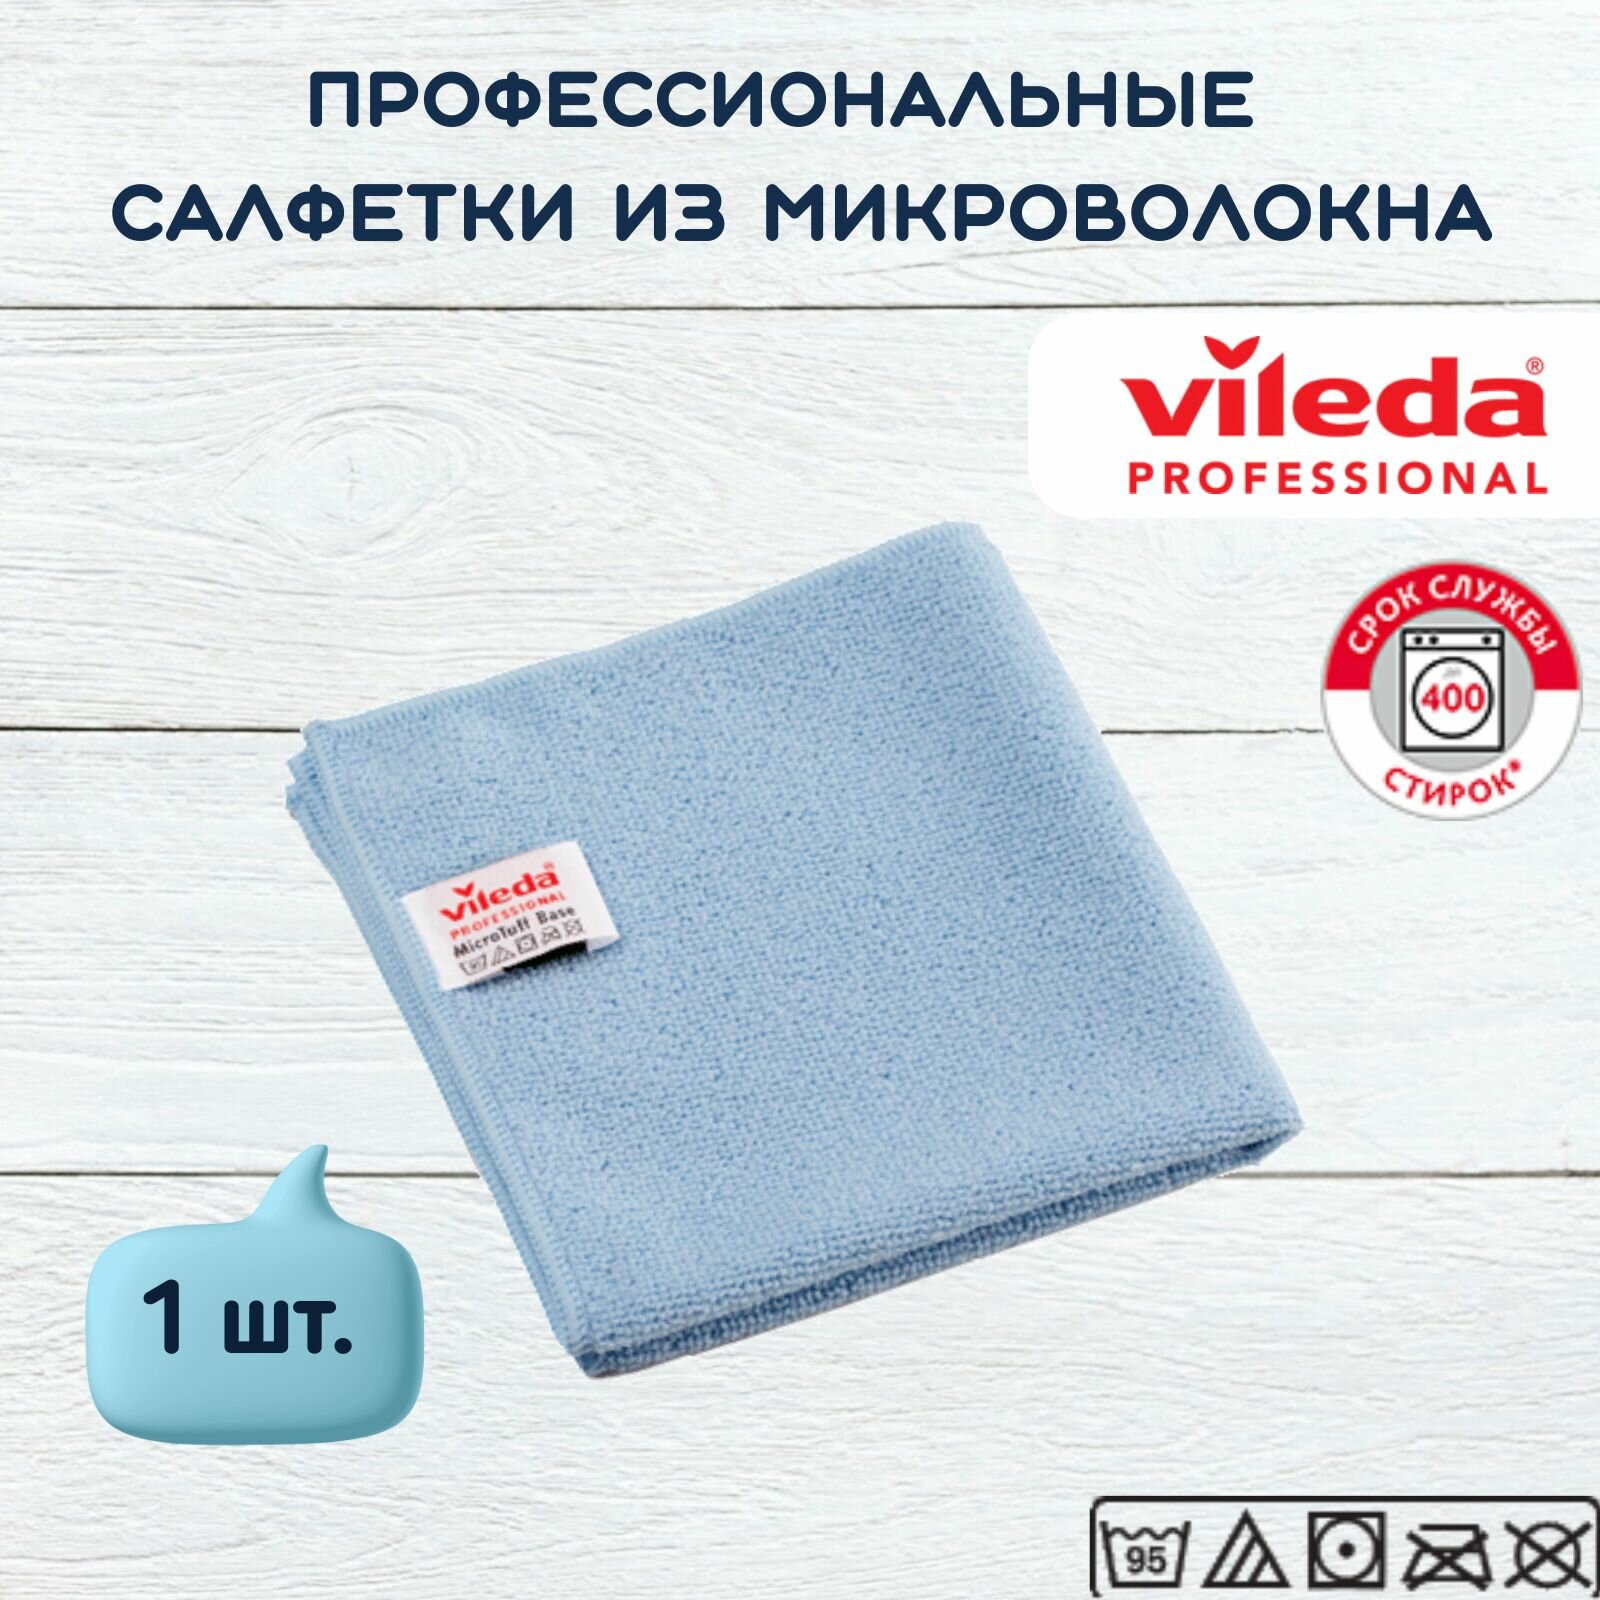 Салфетка профессиональная для уборки из вязаного микроволокна Vileda МикроТафф Бэйс 36х36 см, голубой, 1 шт.